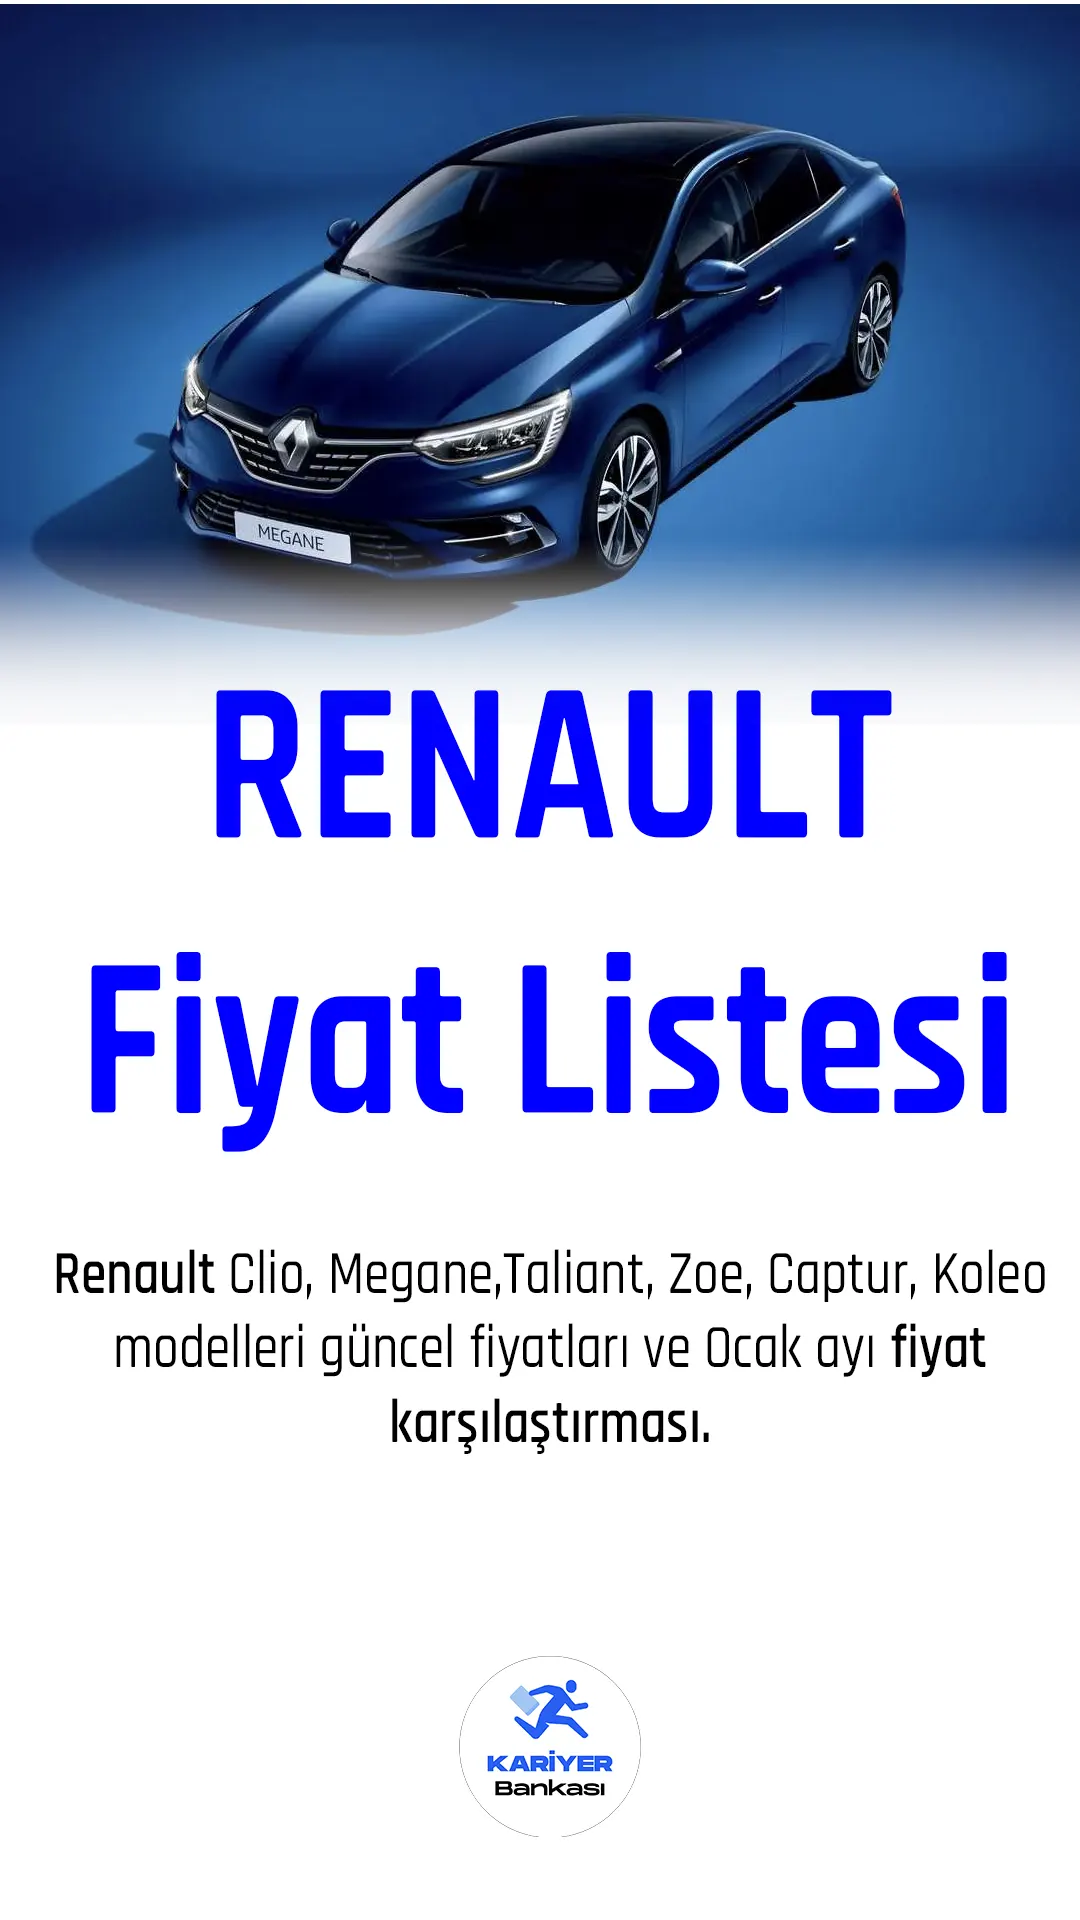 Renault Şubat 2023 fiyat listesi yayımlandı.